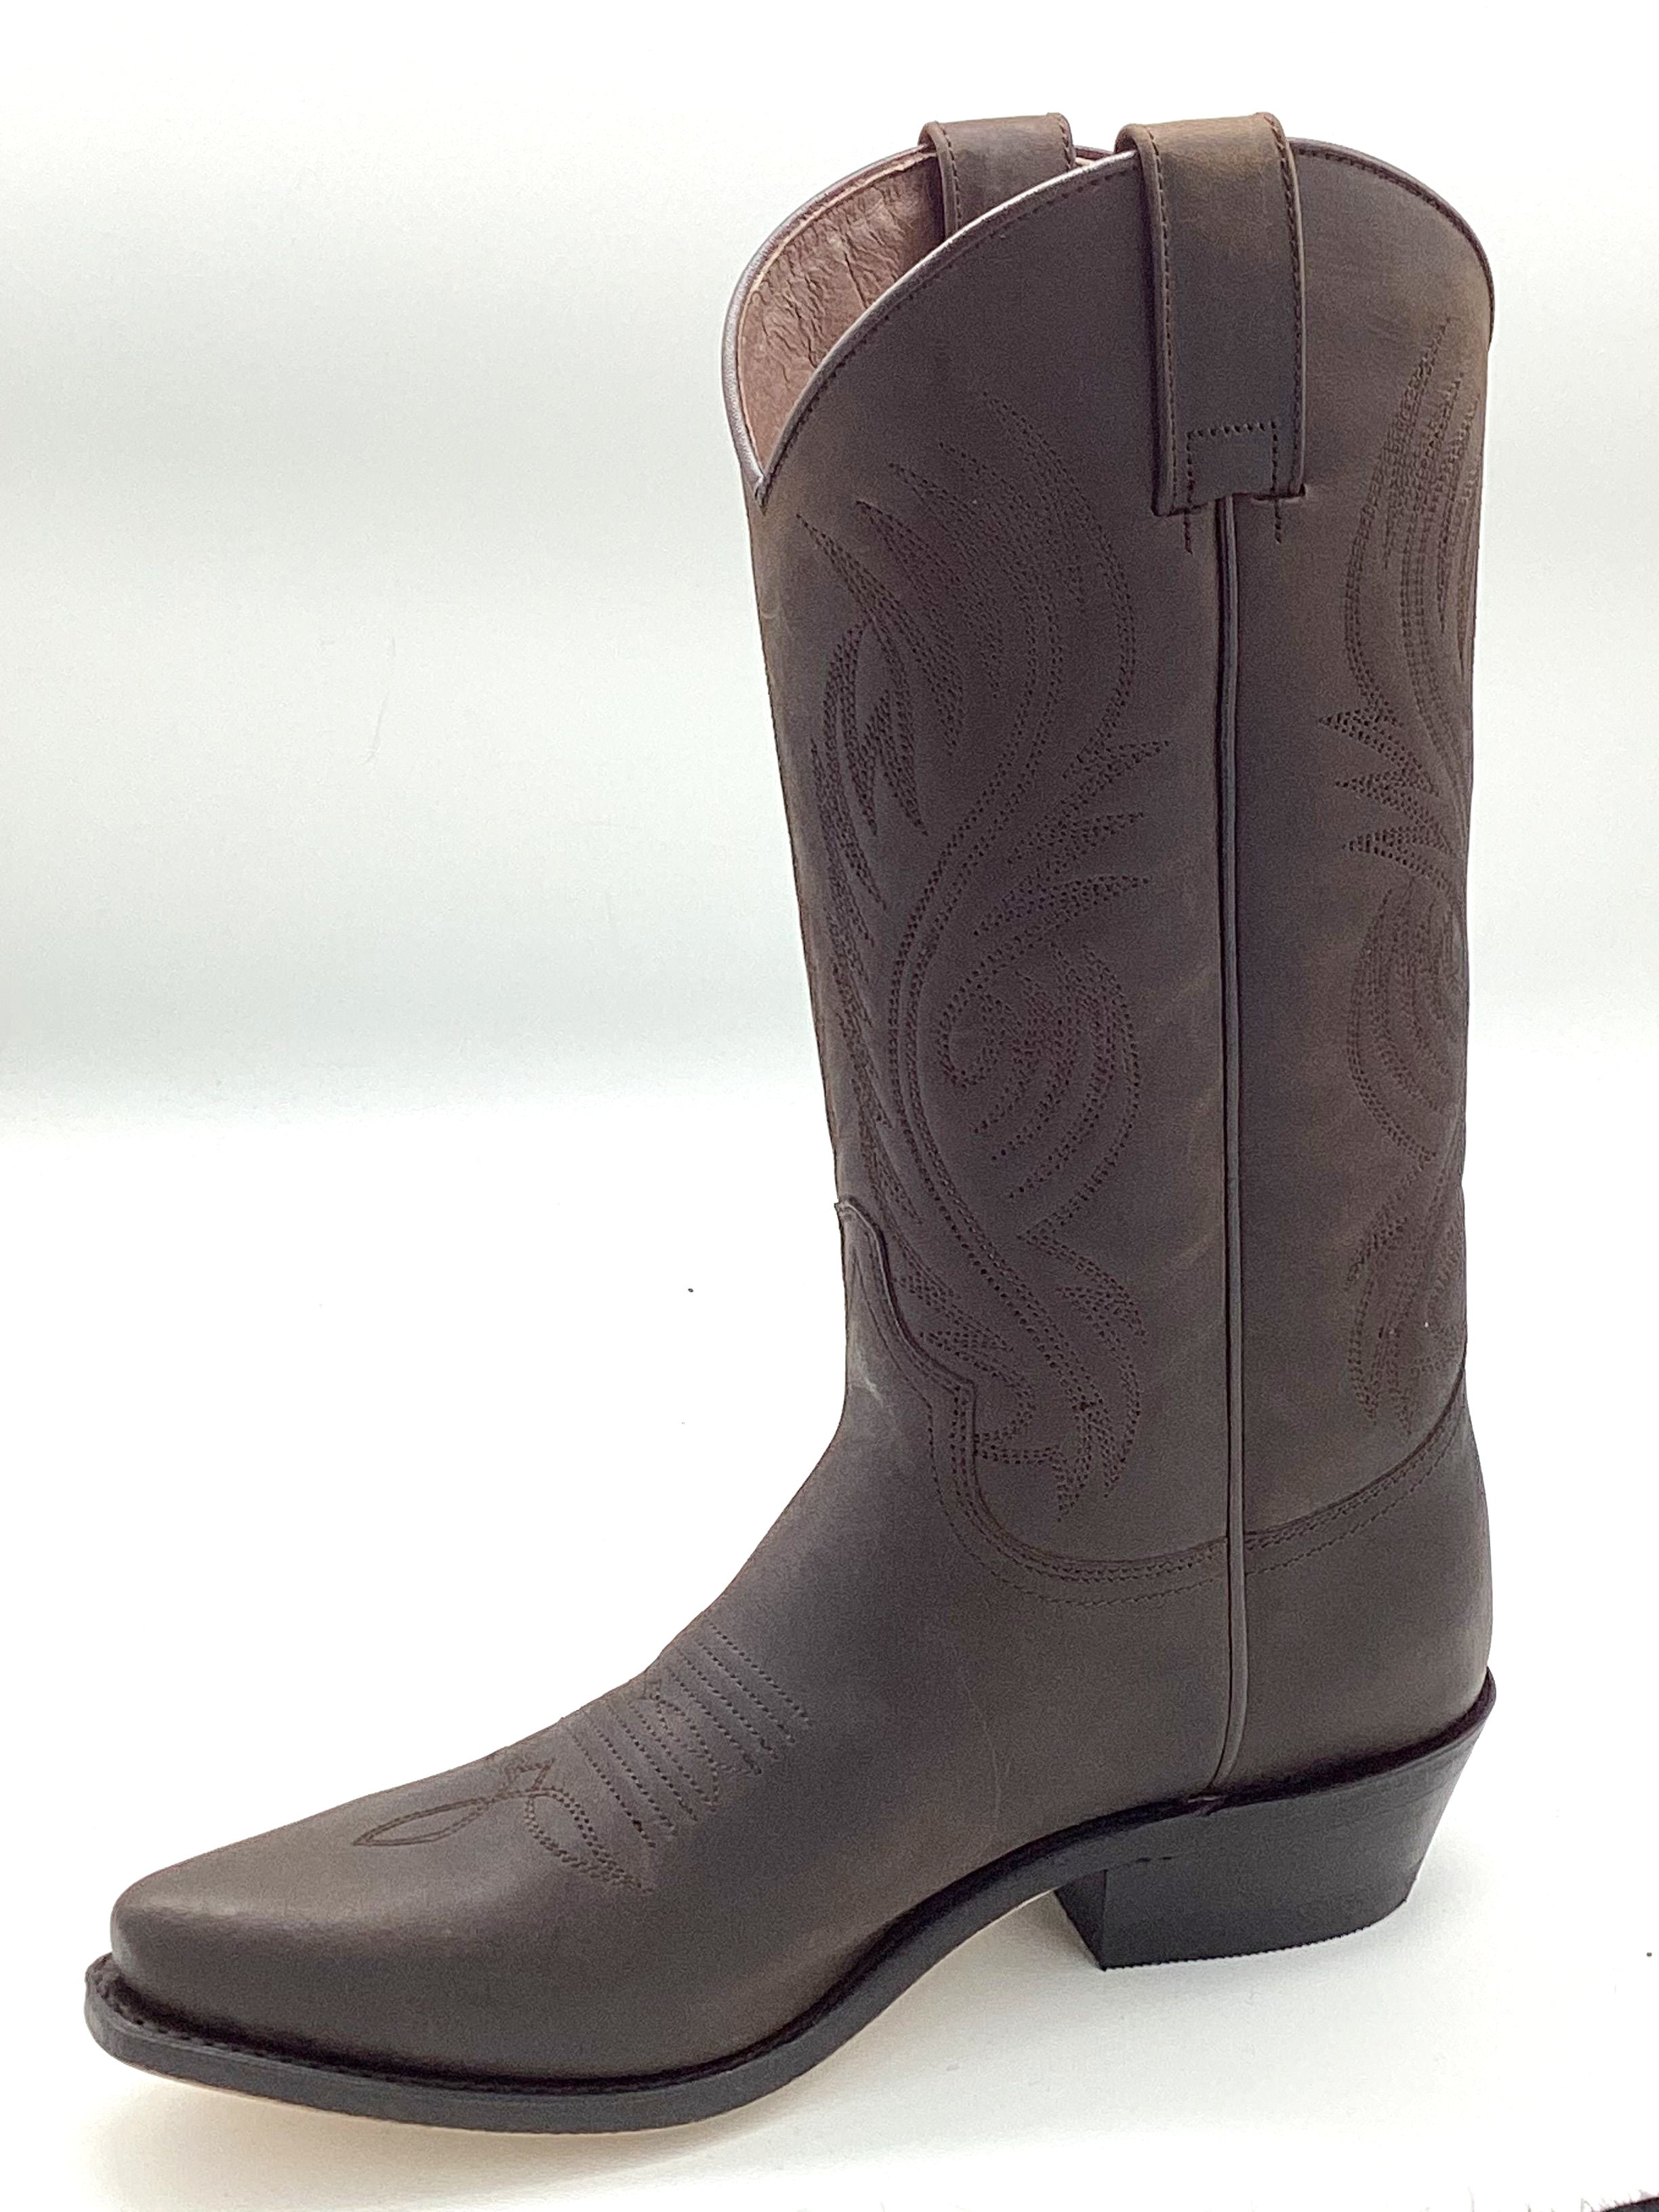 SENDRA women's boots western/cowboy/biker boots brown